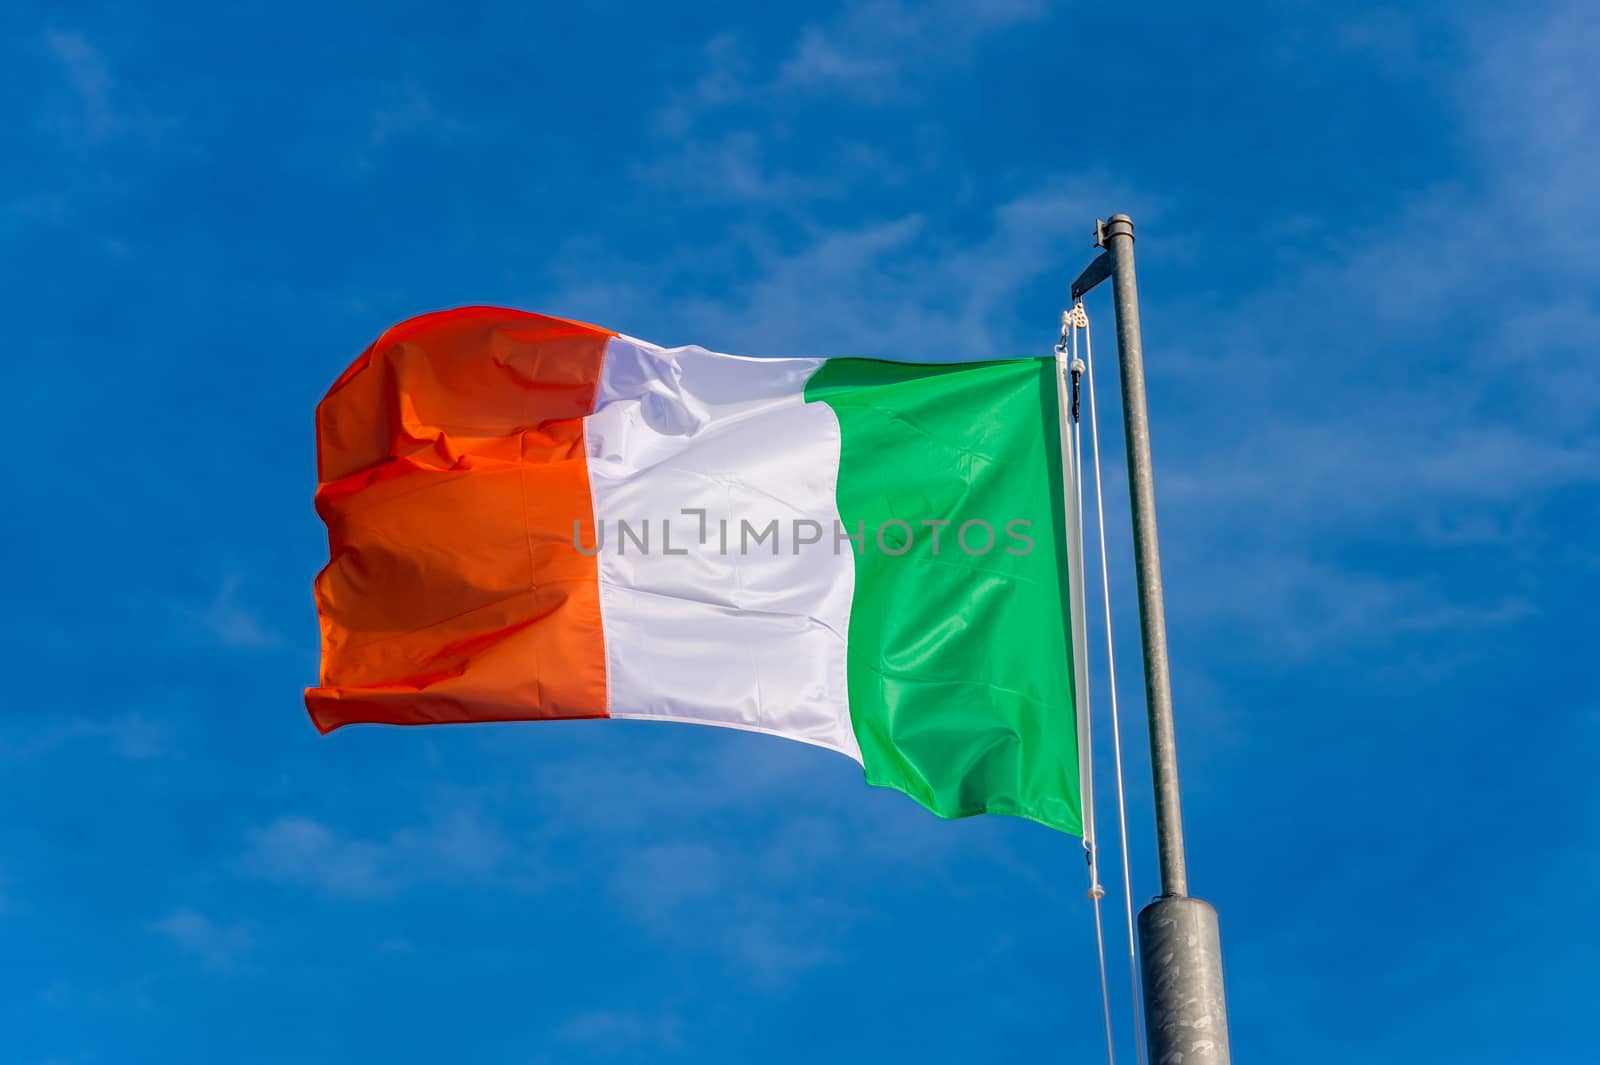 Italian flag waving against blue sky in Boulogne sur Mer, France.